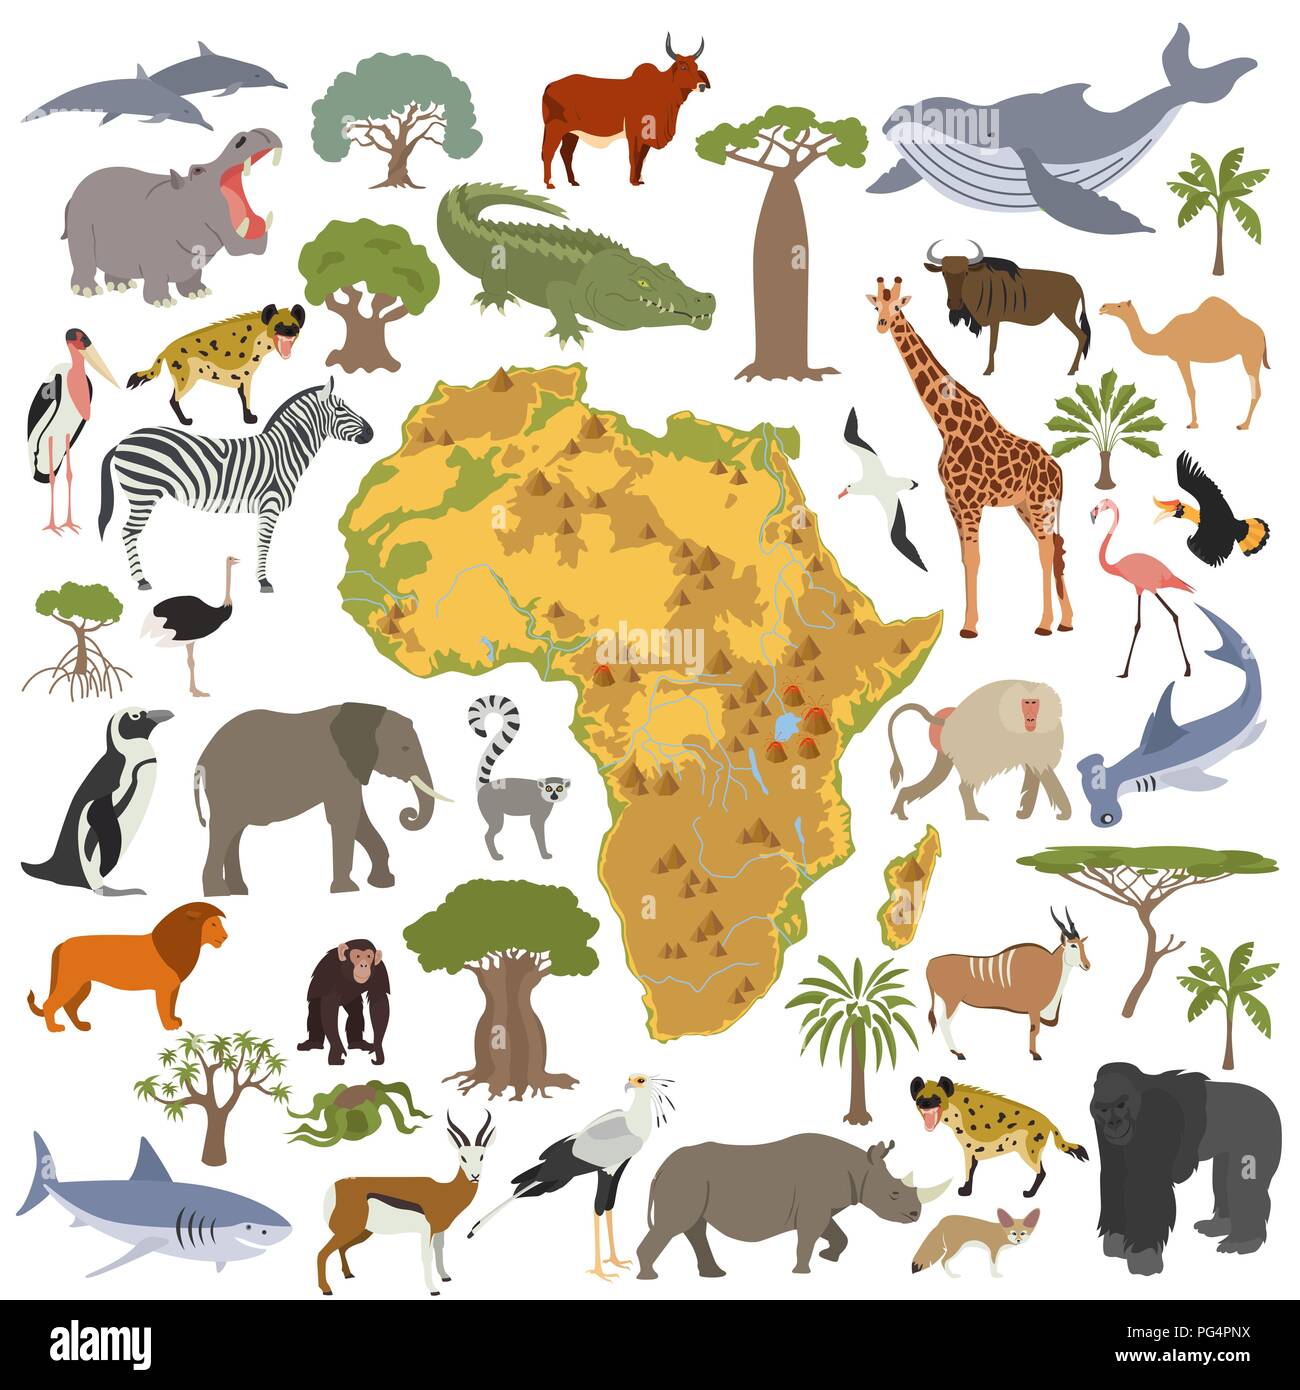 Africa piatto flora e fauna mappa elementi costruttore. Animali, uccelli e Sea life isolato su bianco grande set. Costruire la propria geografia infographics col Illustrazione Vettoriale